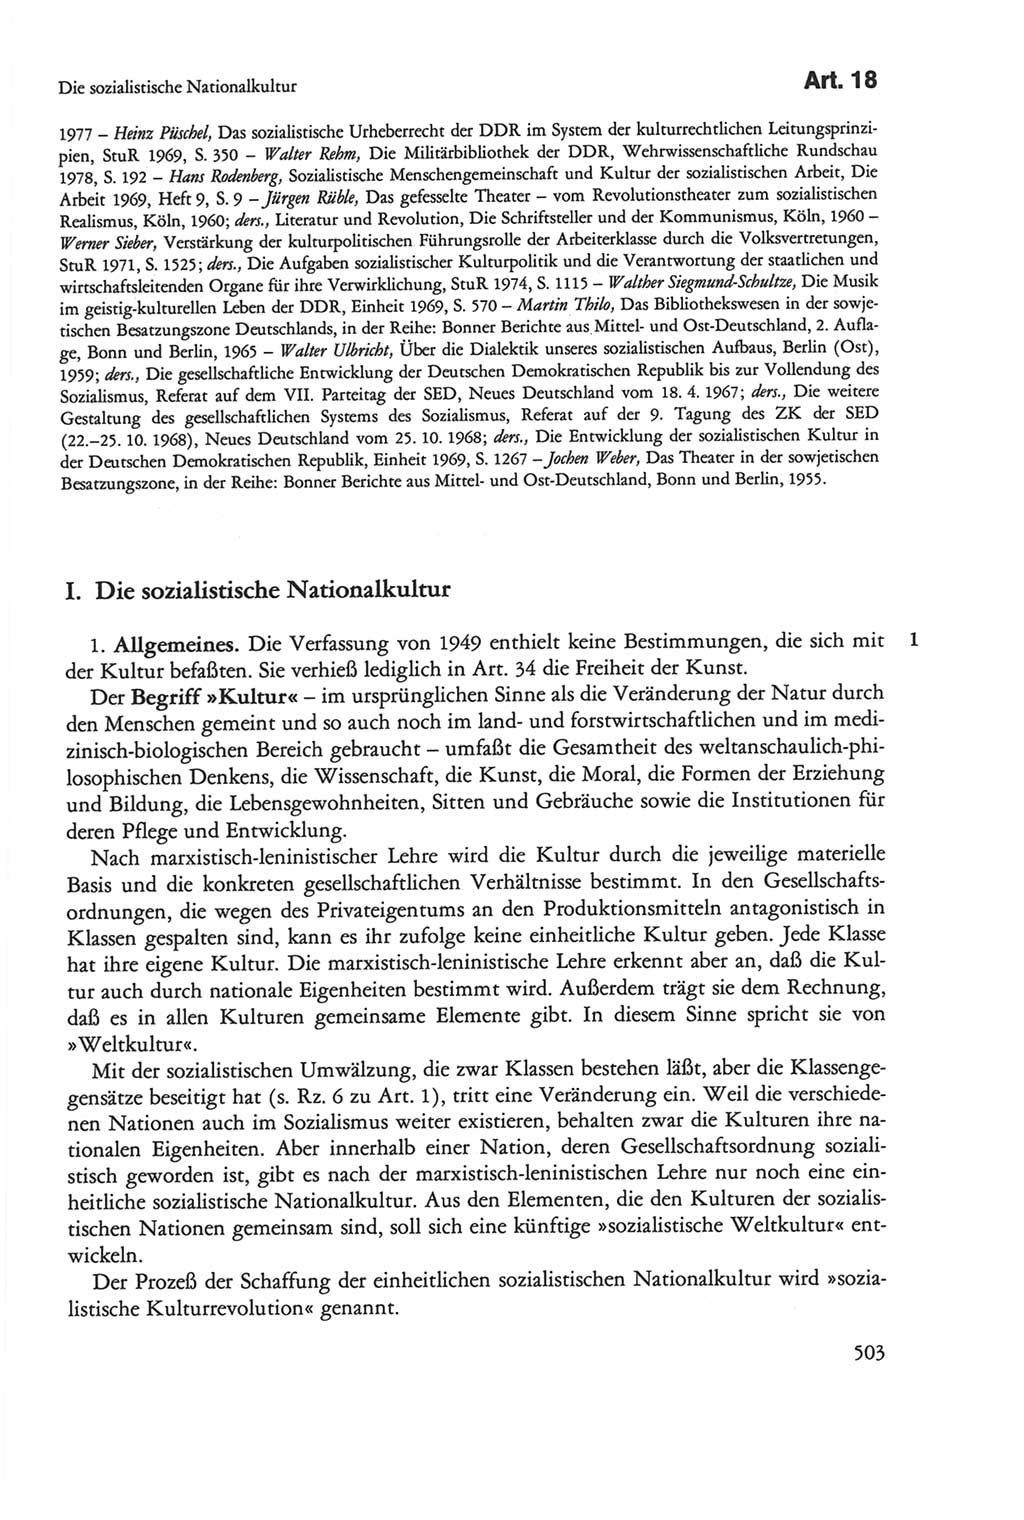 Die sozialistische Verfassung der Deutschen Demokratischen Republik (DDR), Kommentar mit einem Nachtrag 1997, Seite 503 (Soz. Verf. DDR Komm. Nachtr. 1997, S. 503)